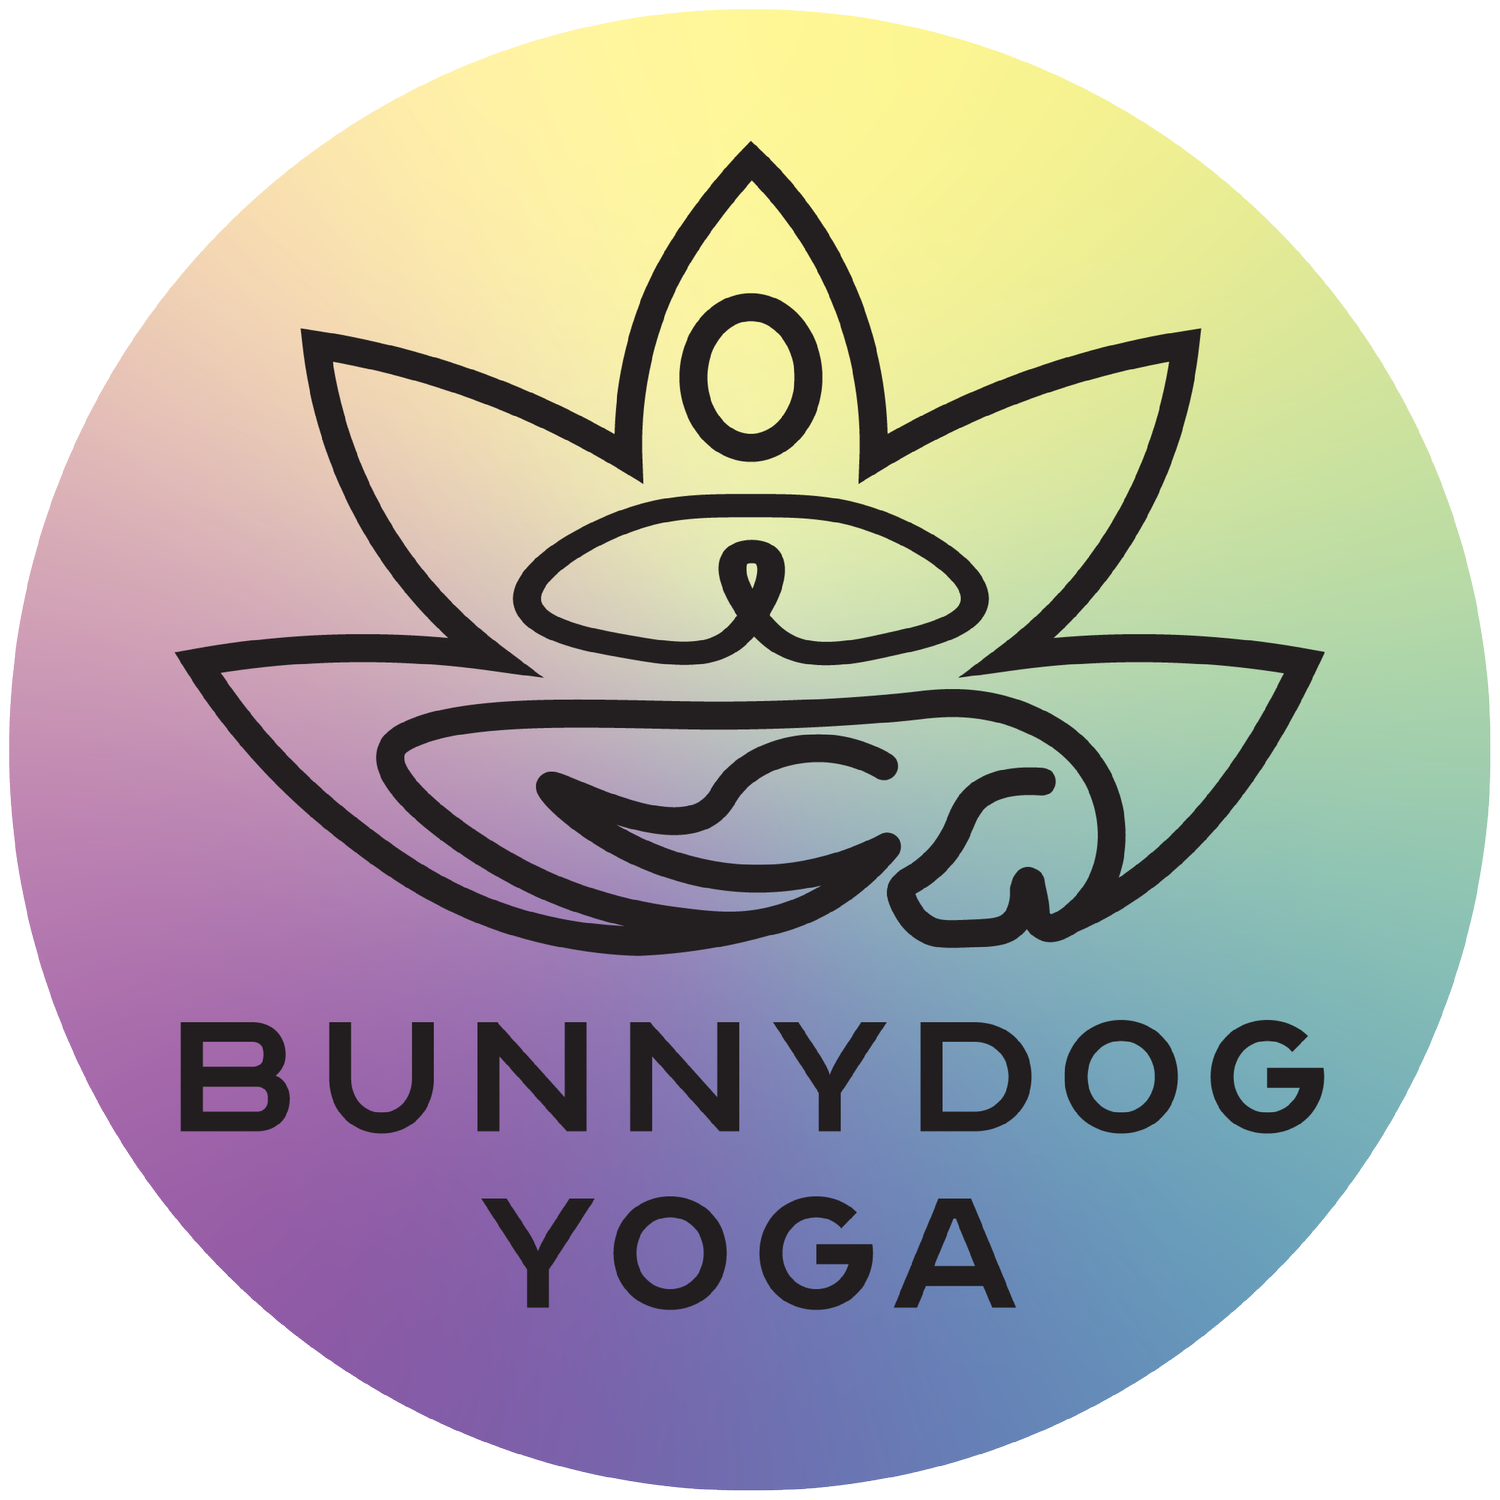 BunnyDog Yoga